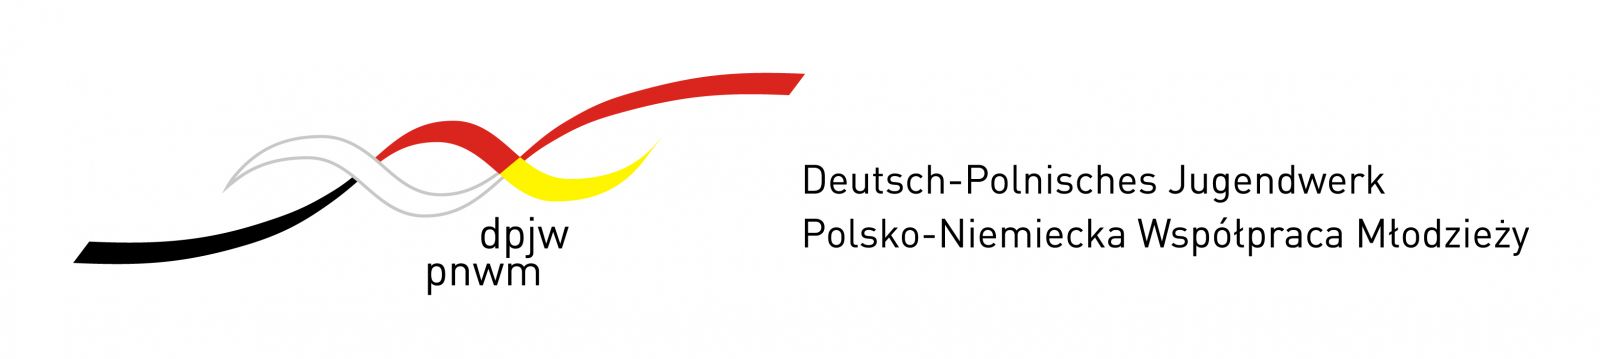 Logo DPJW RGB flach für Internetseiten